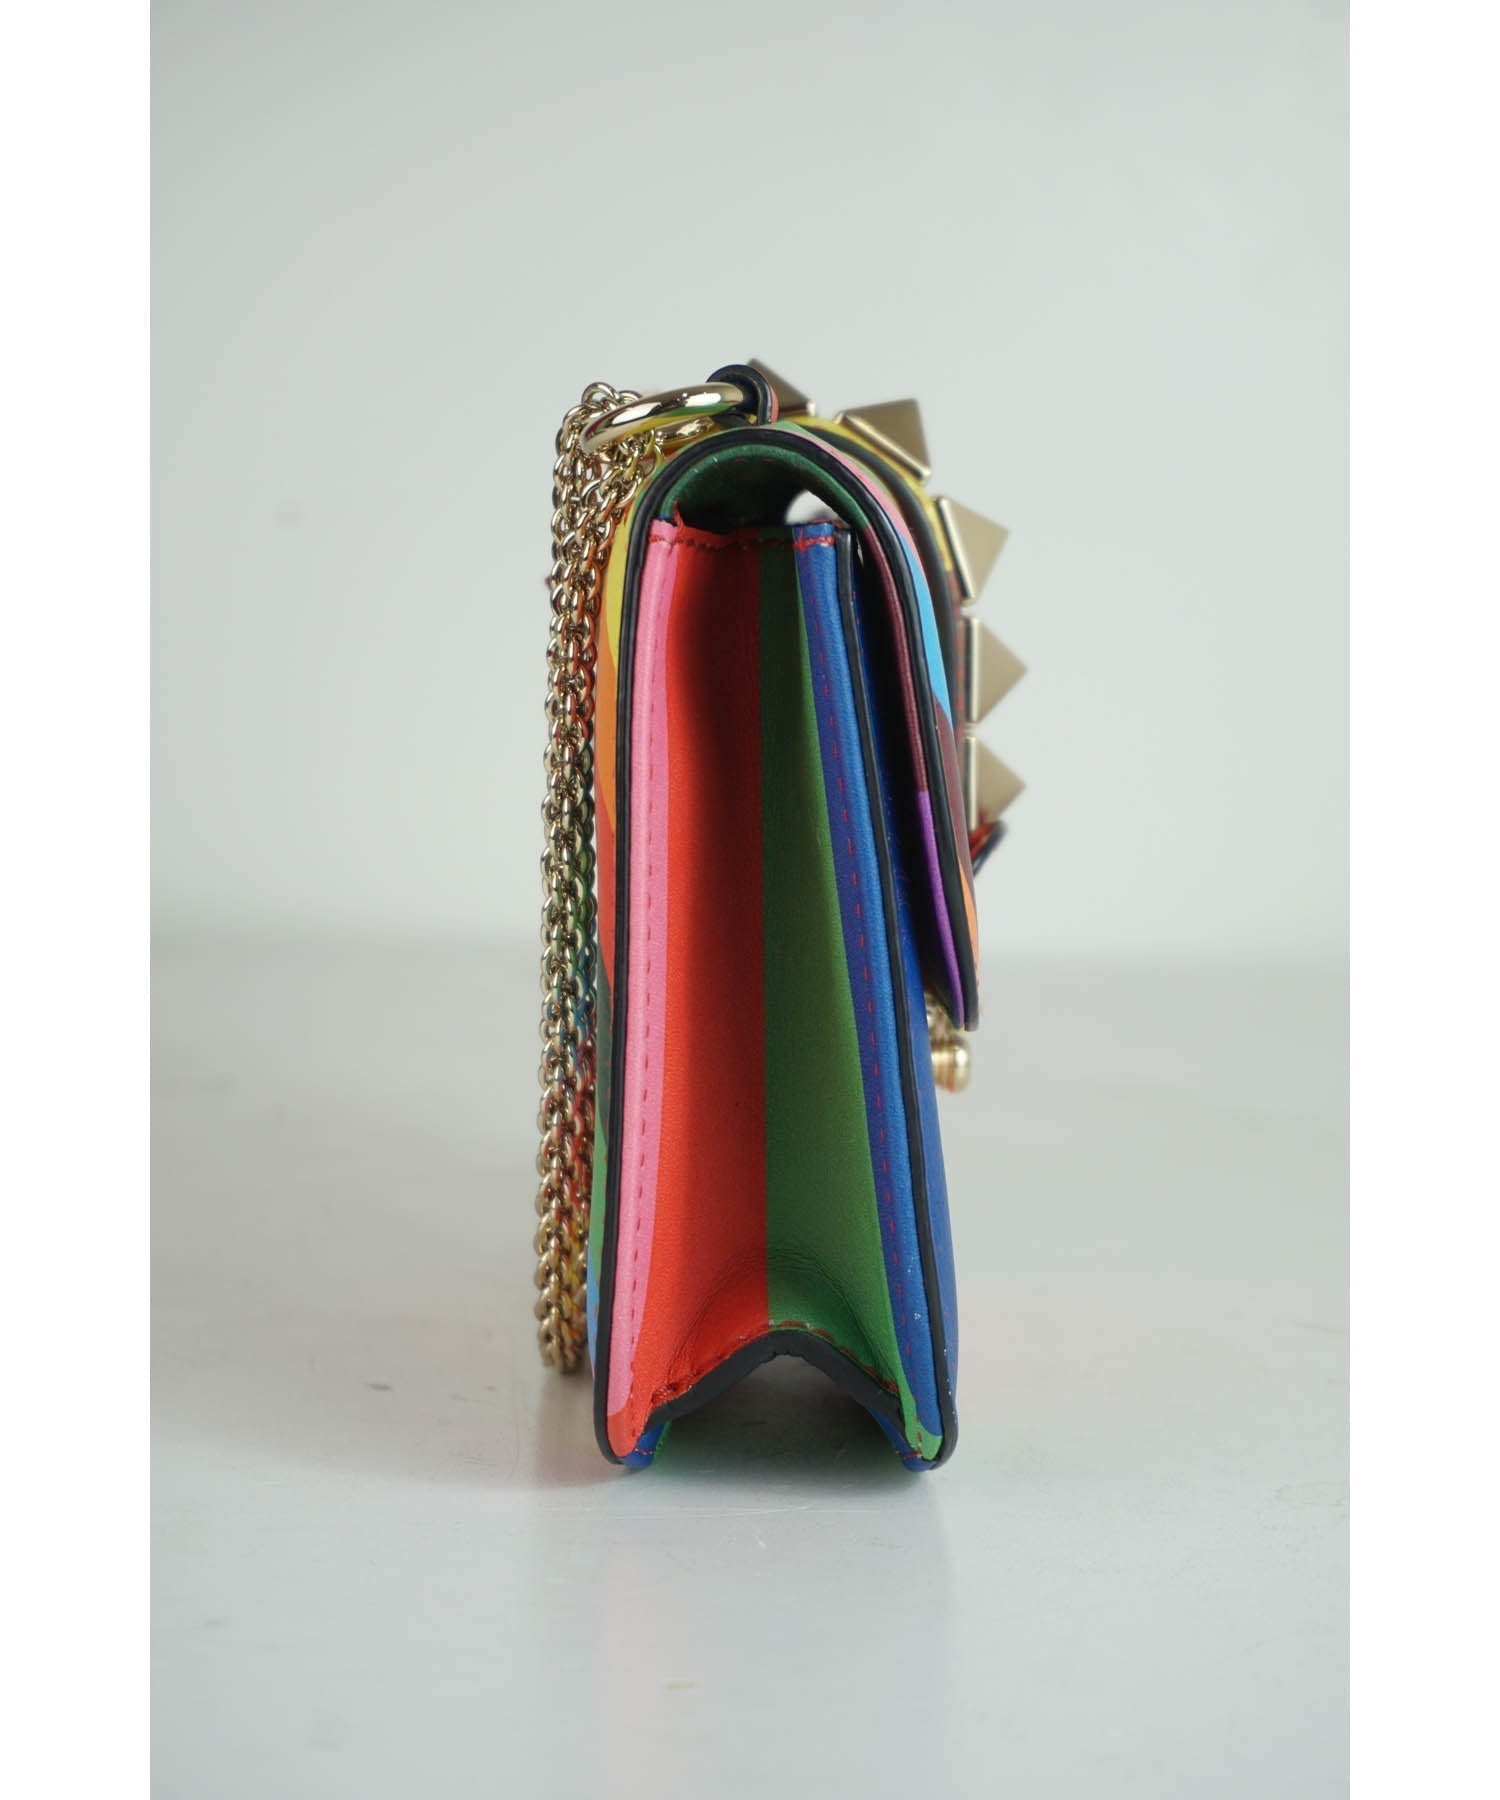 Valentino Rainbow Rockstud Glam Lock Bag 2015